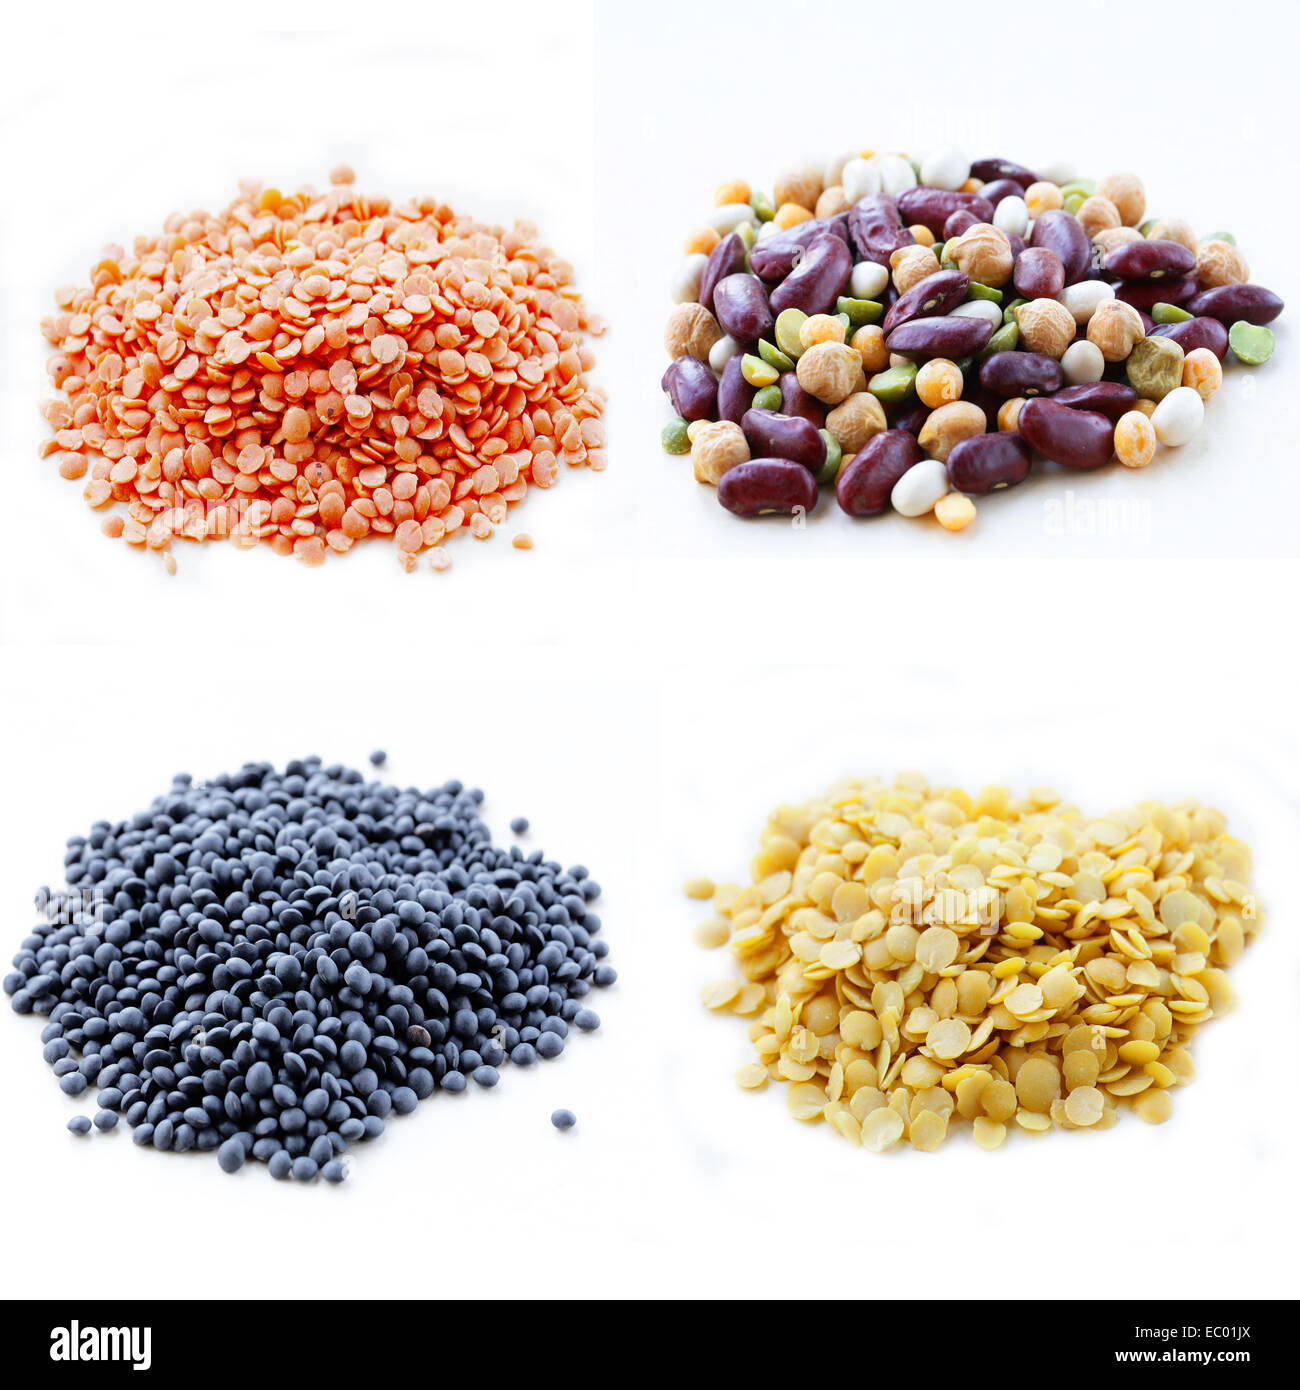 Collage de différents types de lentilles et haricots secs (rouge, noir, jaune) Banque D'Images